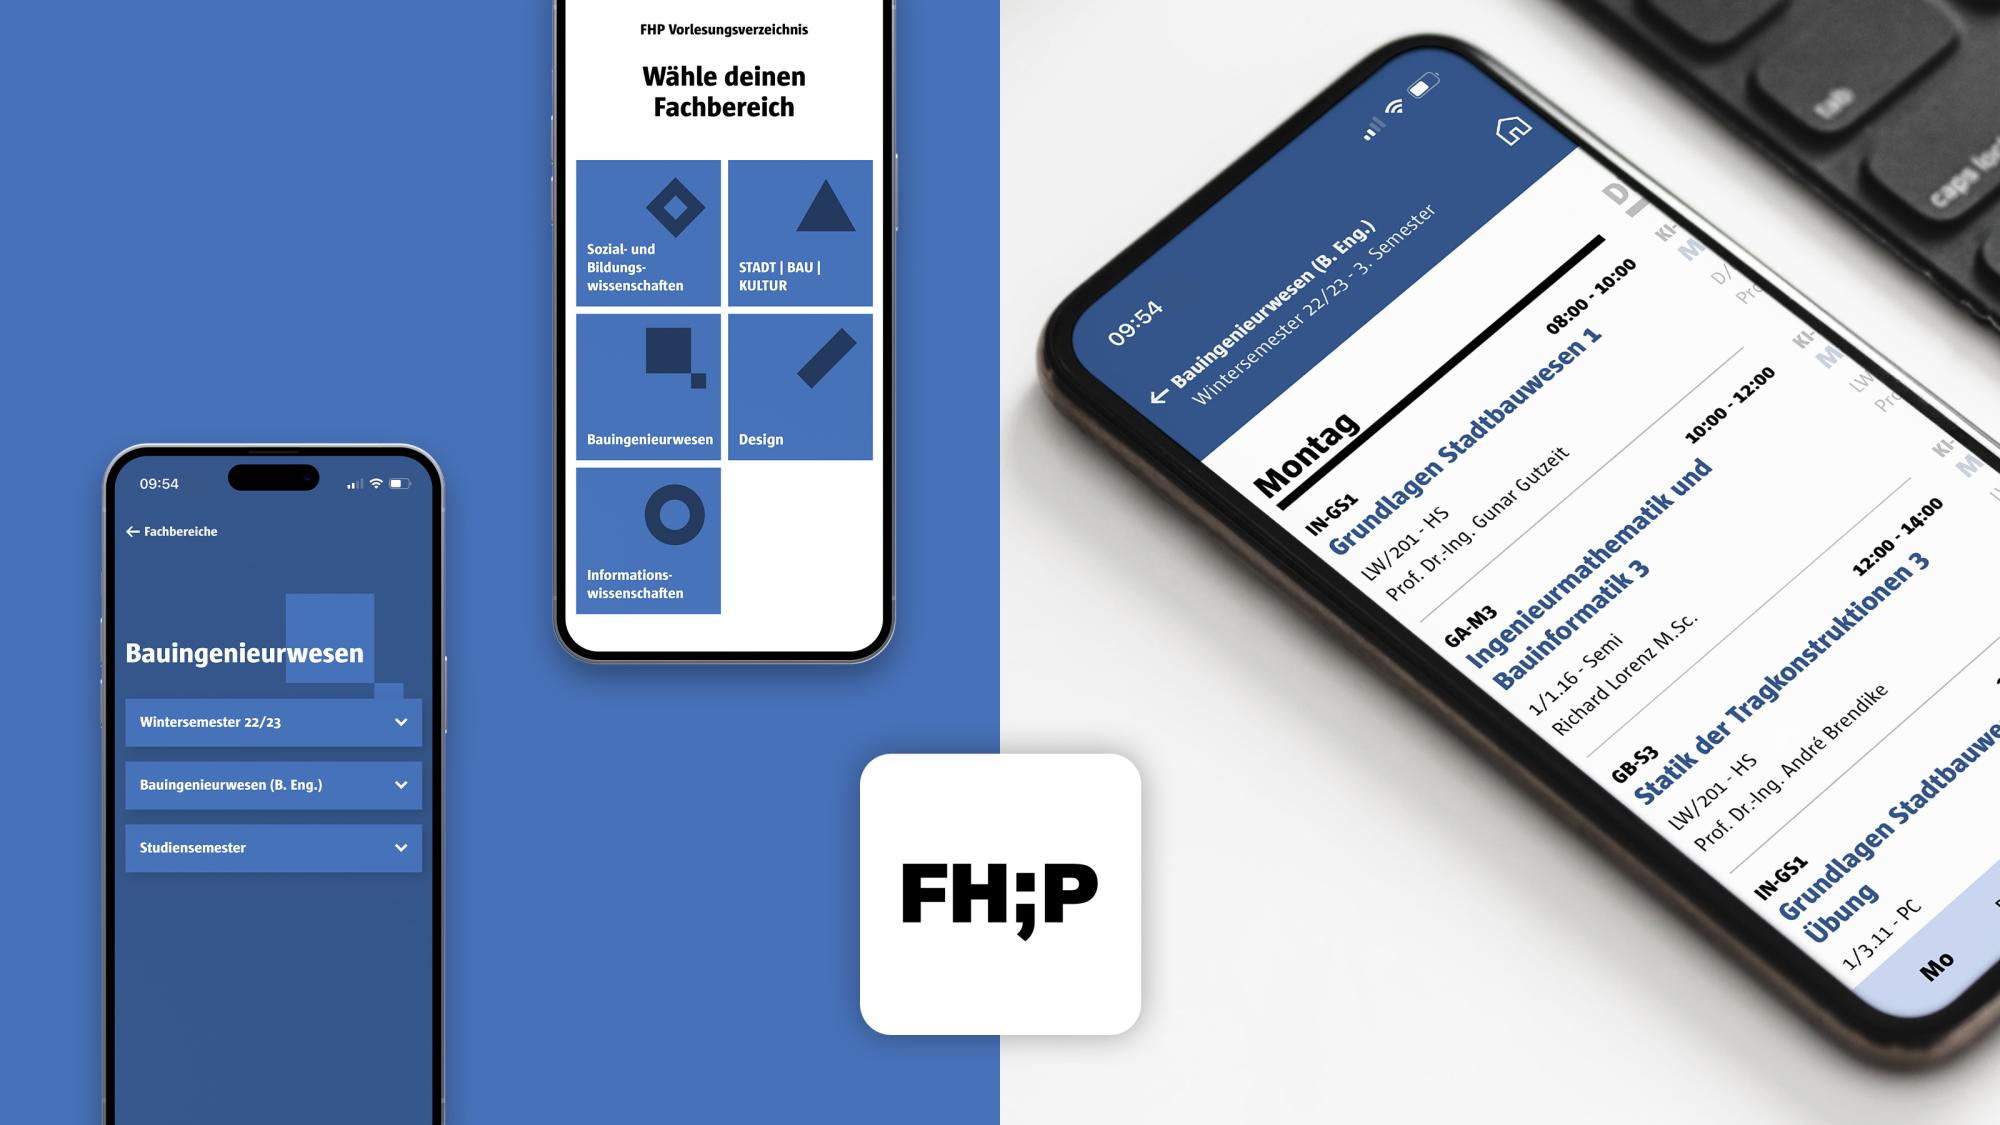 Vorlesungsverzeichnis-App der  FH Potsdam